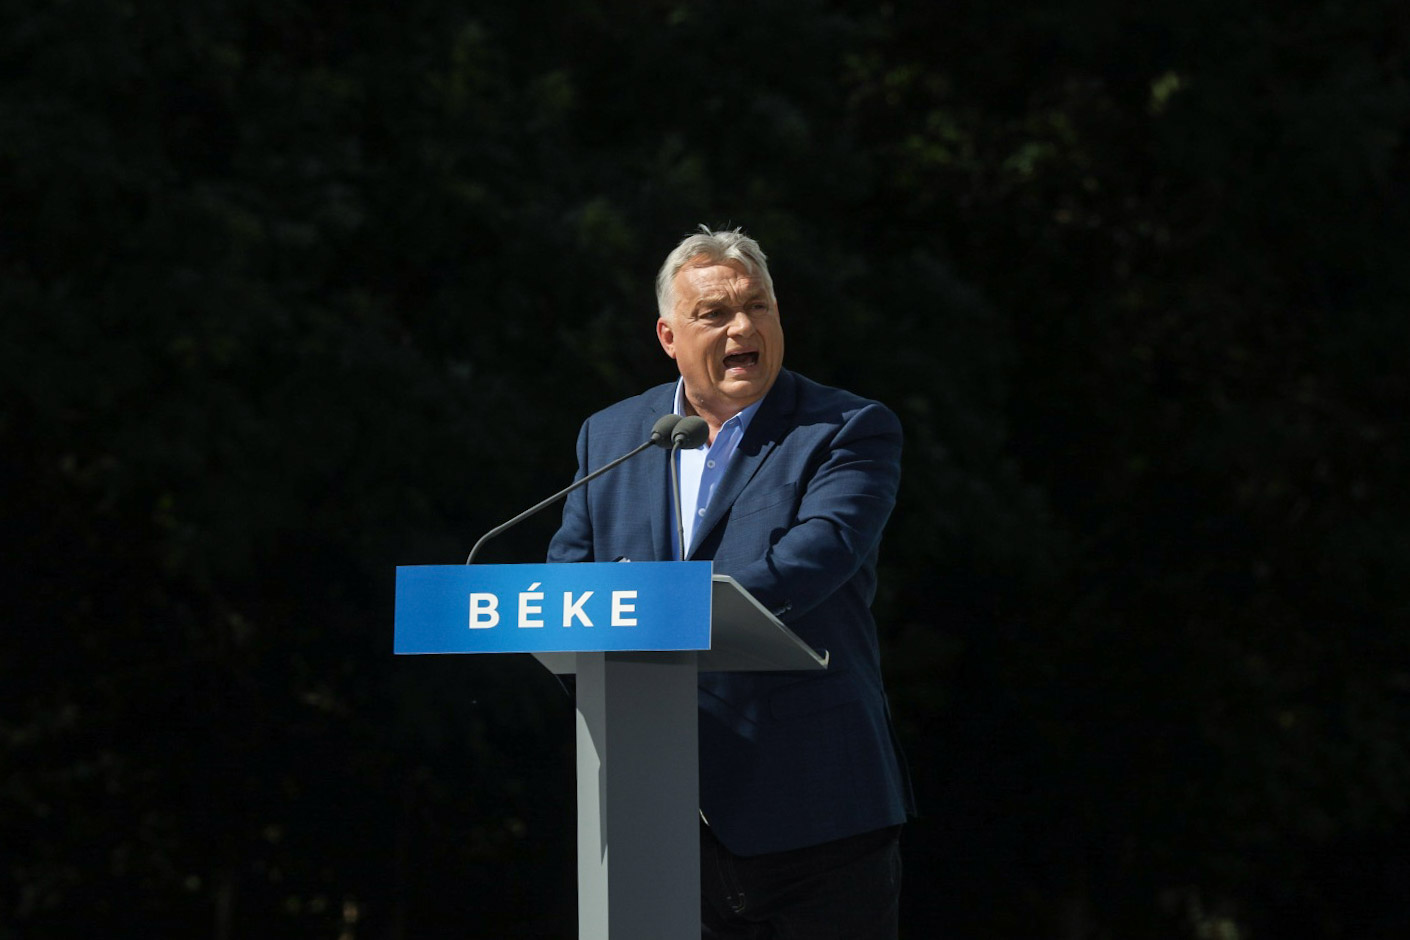 A Margitszigetre vonult a Békemenet, ahol Orbán Viktor 35 percig beszélt, és ismételgette: háború